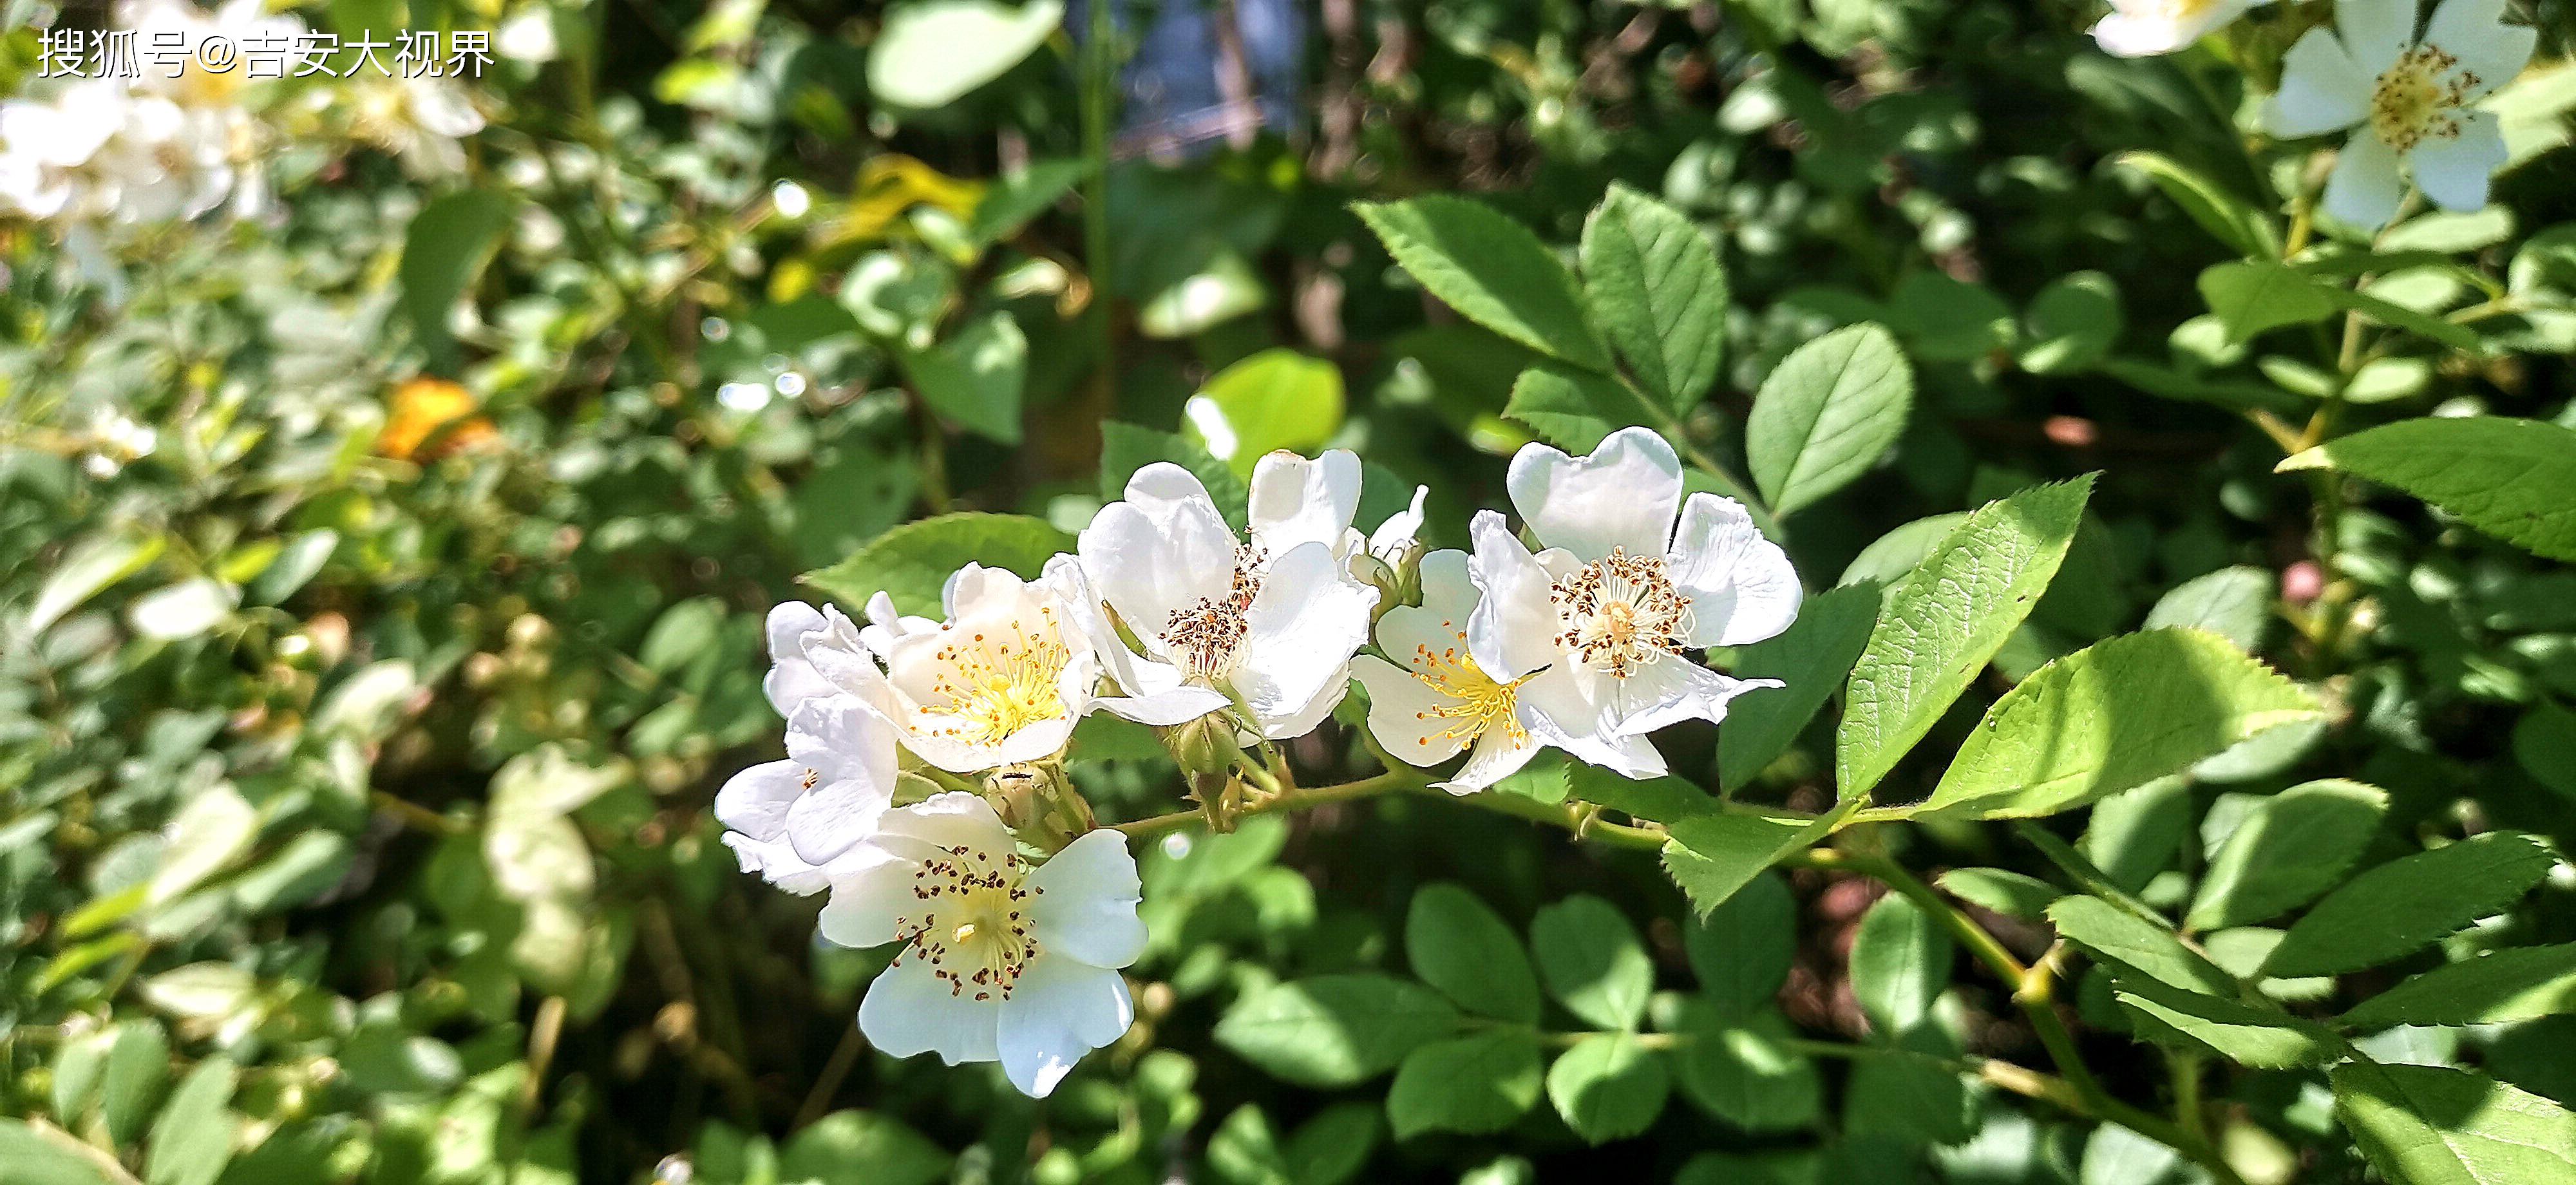 吉安视觉:后河味道的白色野蔷薇花开烂漫